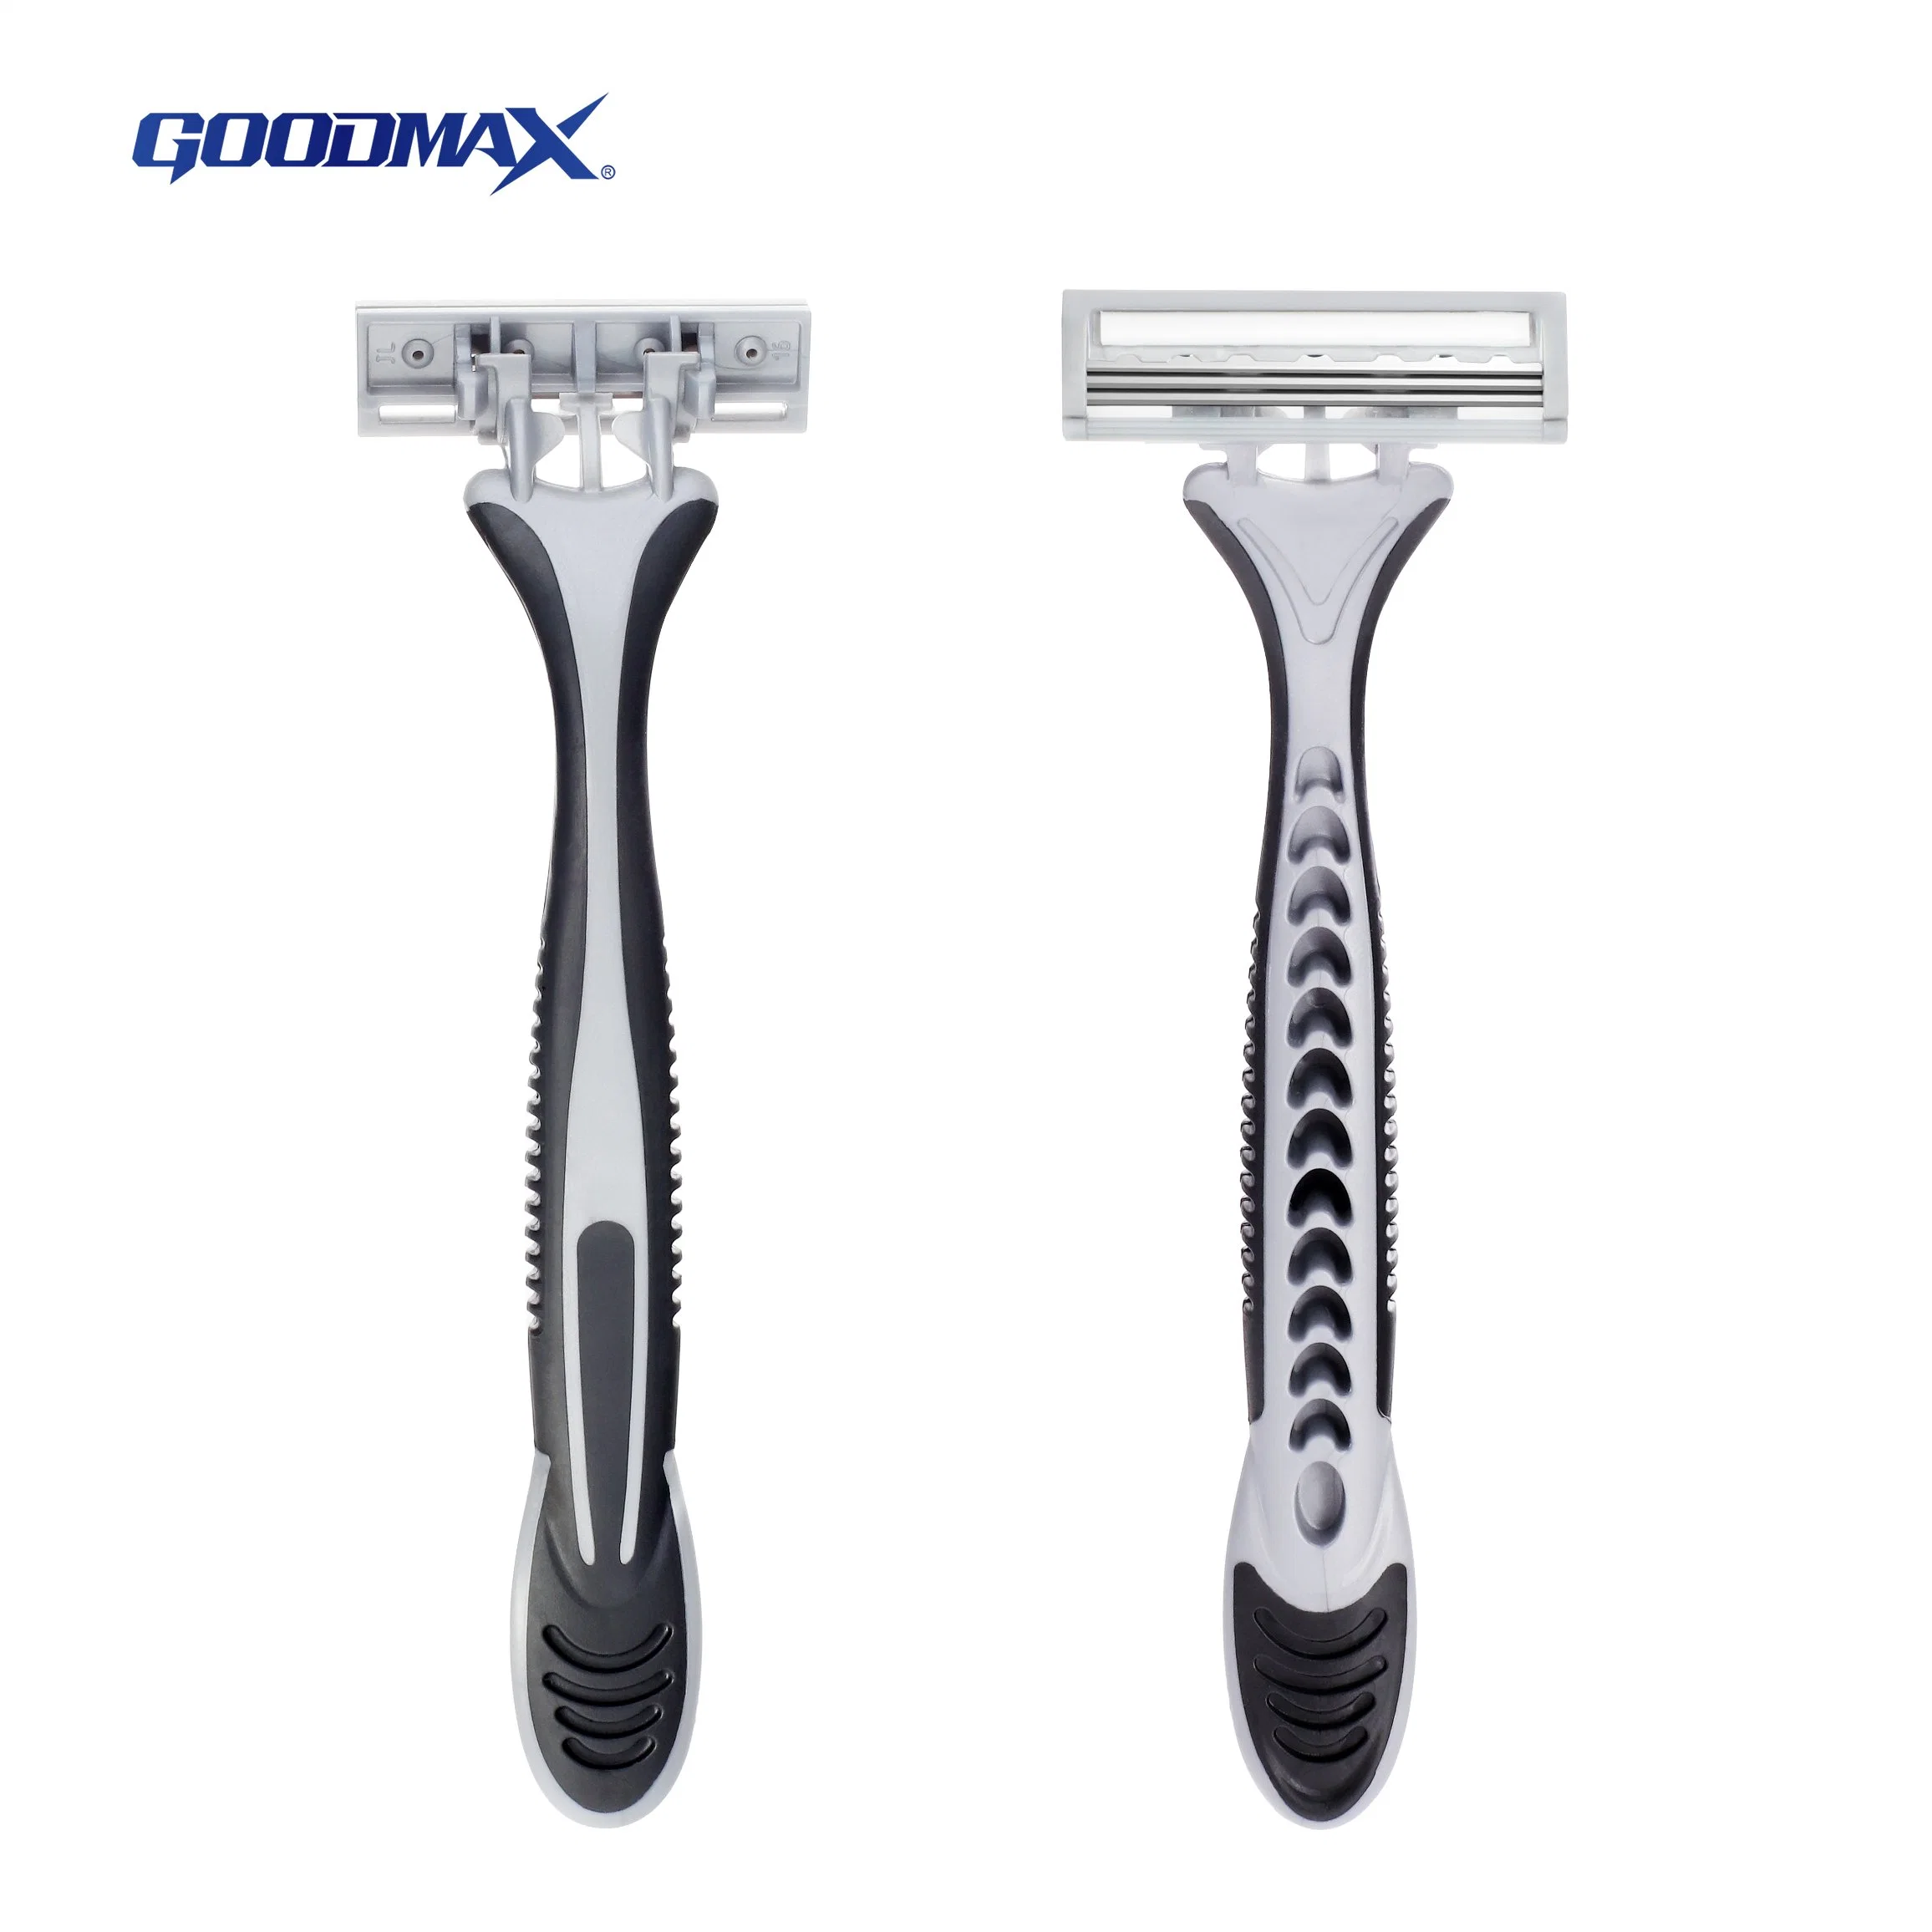 Afeitadora de afeitado desechable de triple cuchilla de alta calidad (Goodmax)